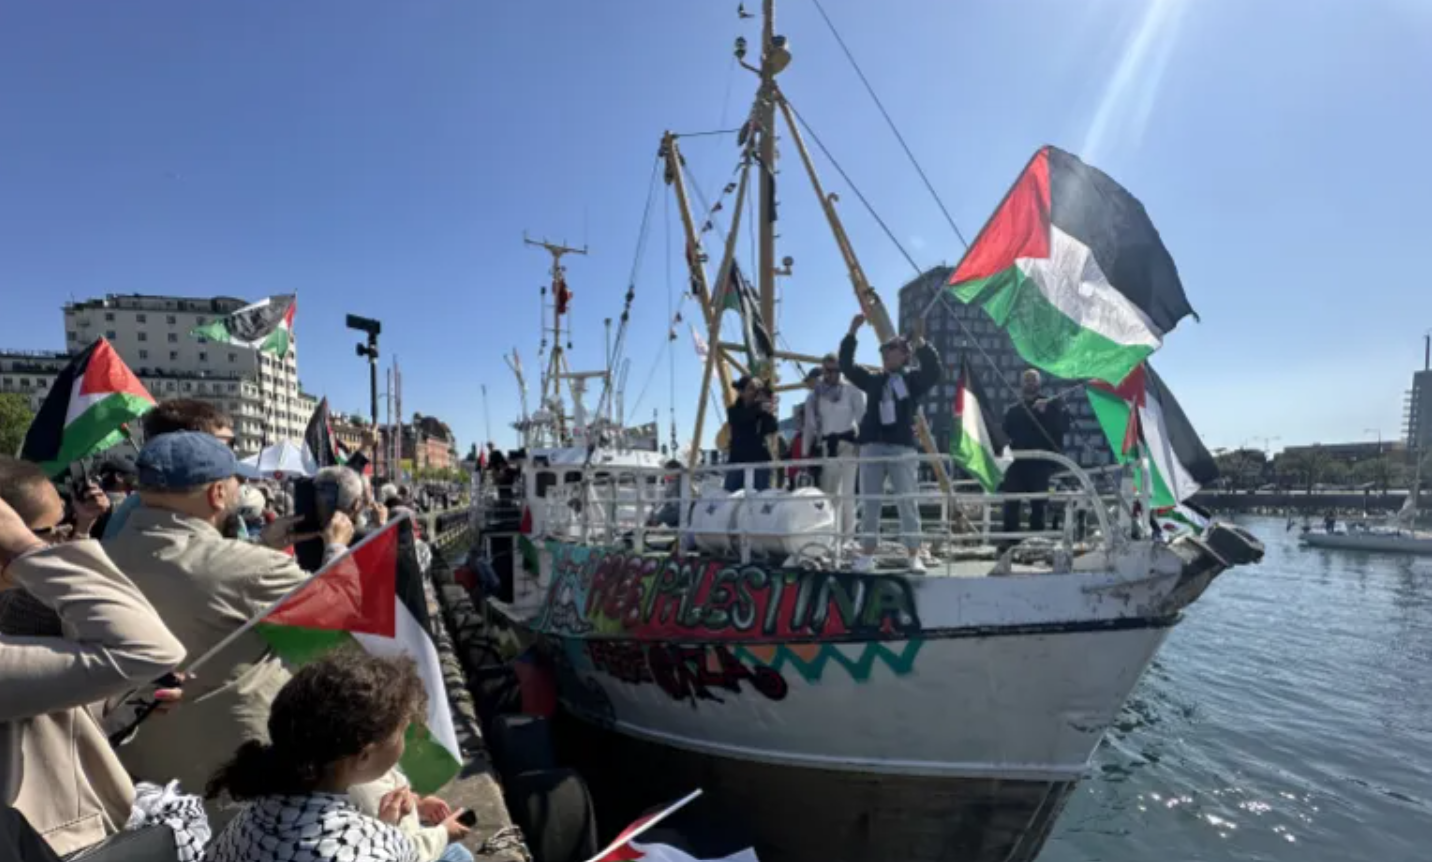 سفينة “حنظلة” ترسو في مالمو: تضامن واحتجاج قبيل يوروفيجن